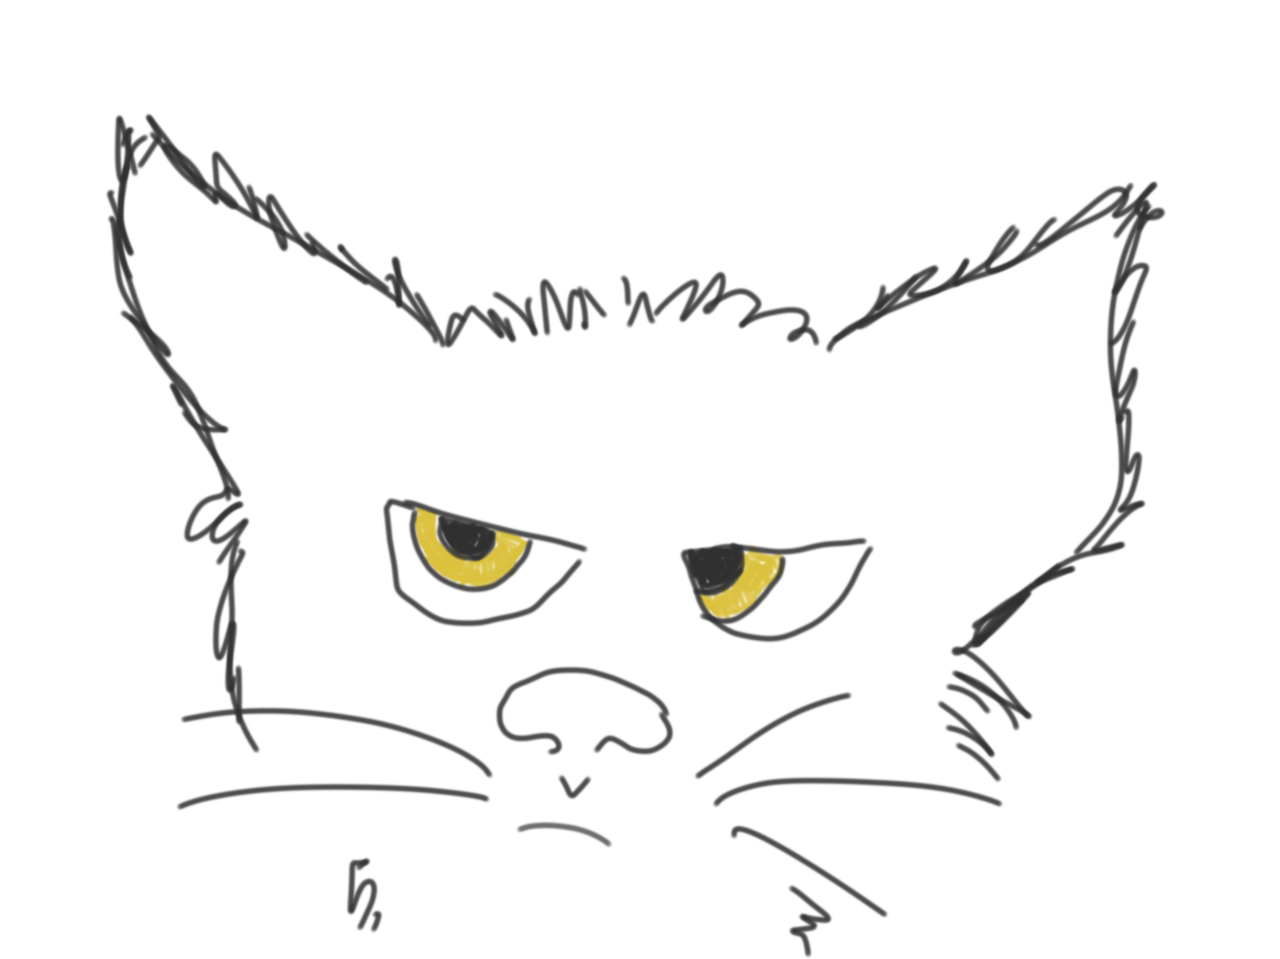 TJ grumpy cat drawing iPad app 2017 or 2018